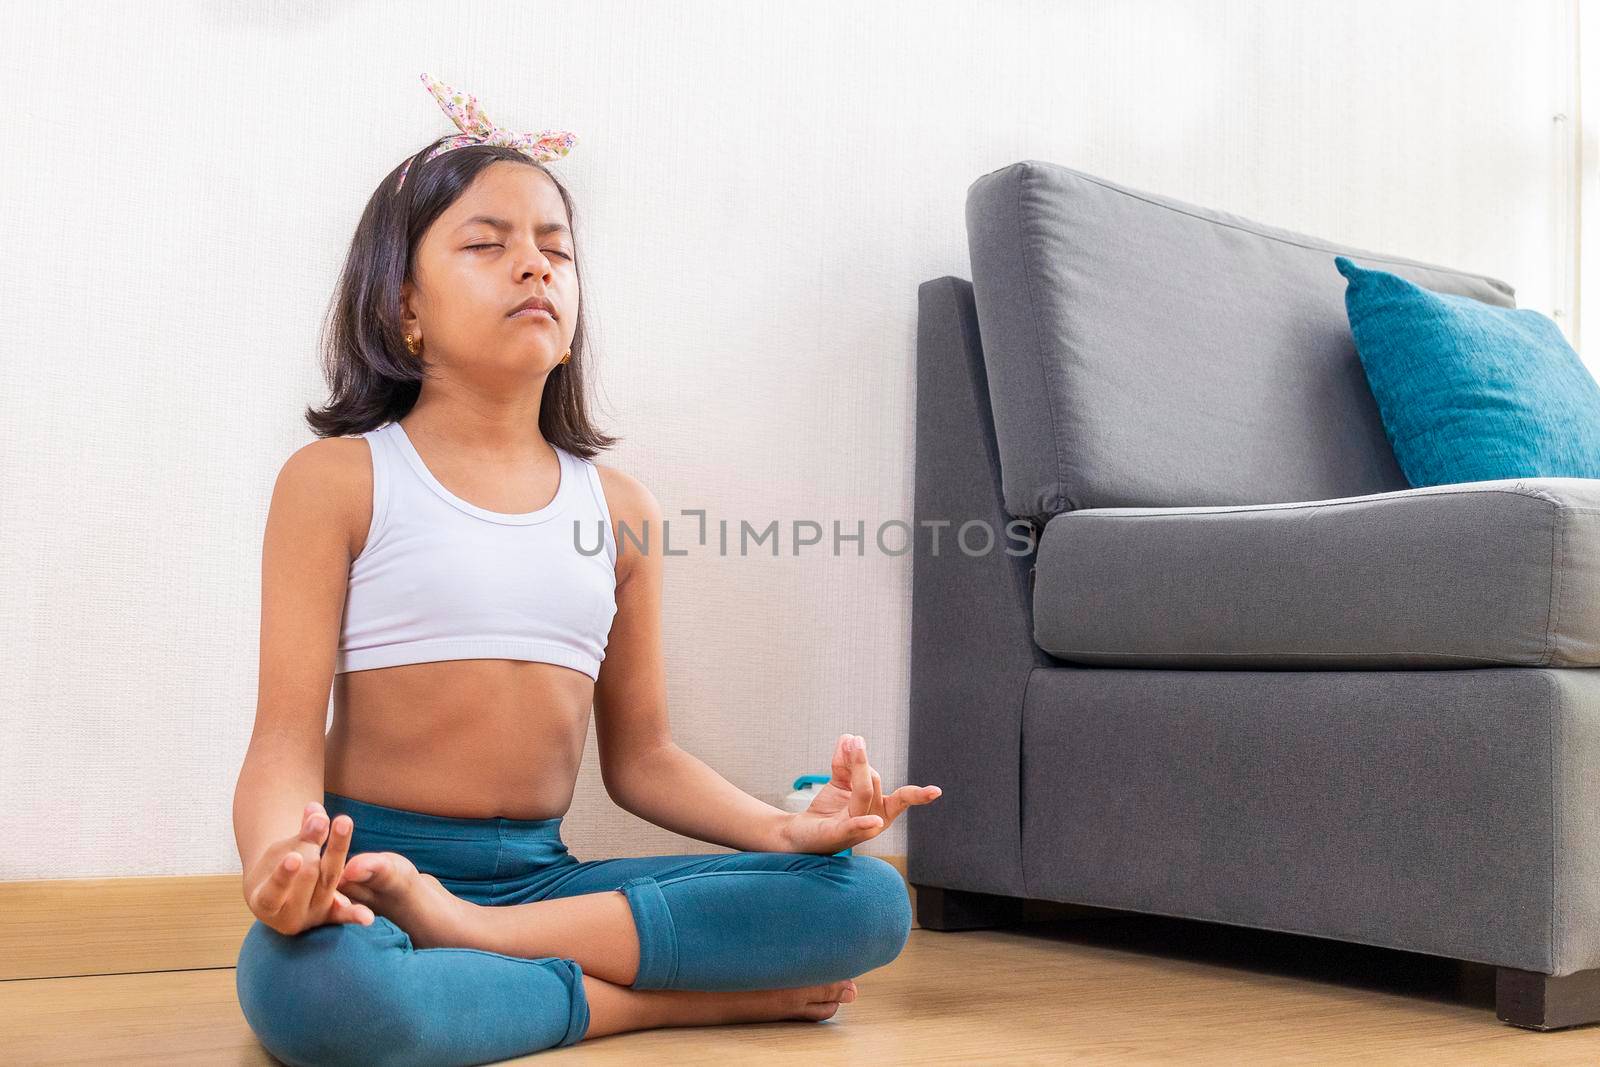 Teen girl doing yoga at home